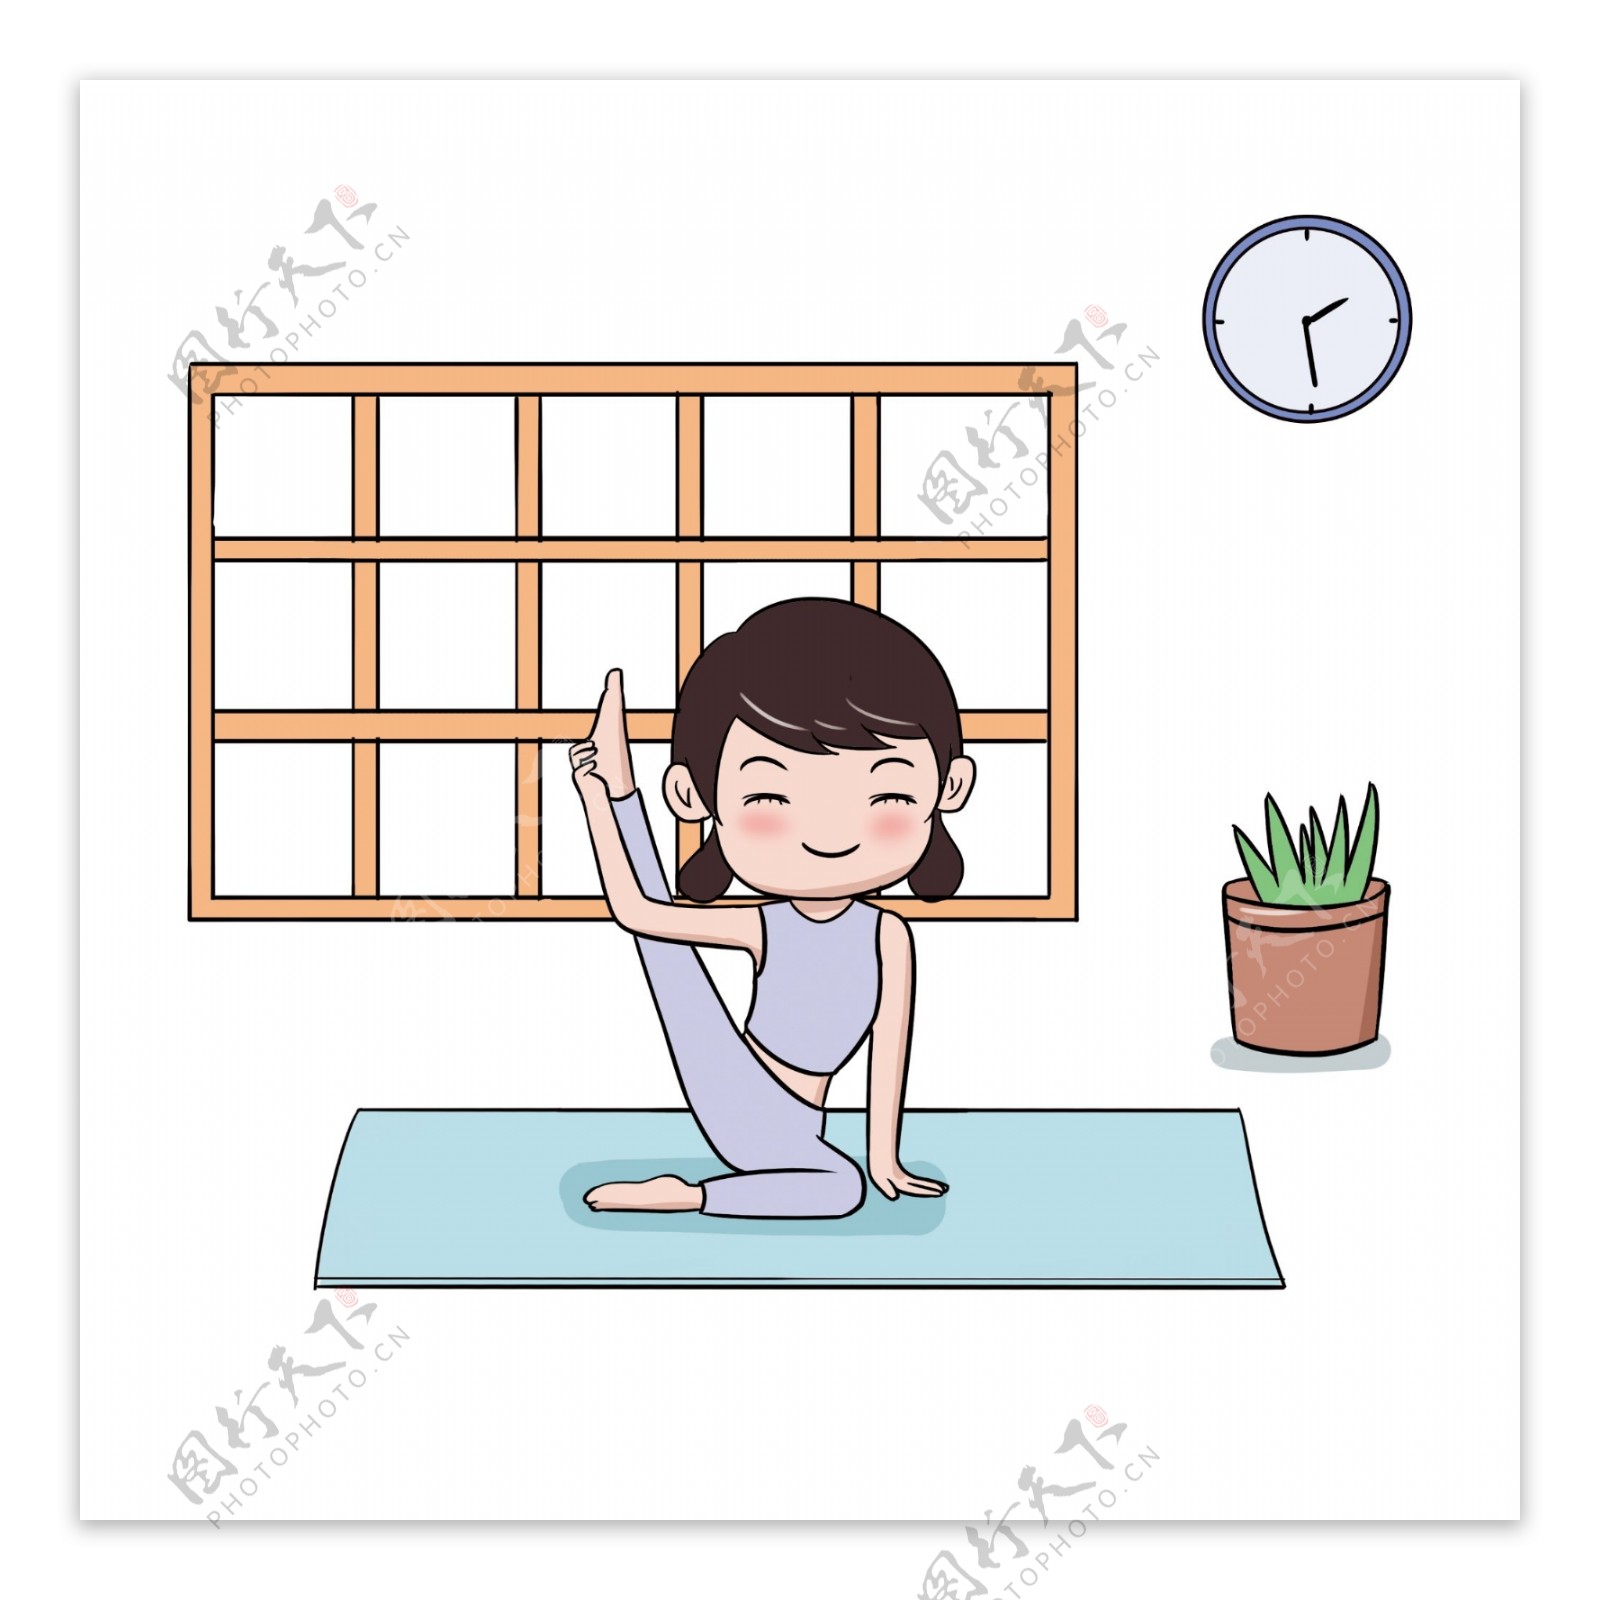 清新风早安世界瑜伽健身健康生活手绘插画